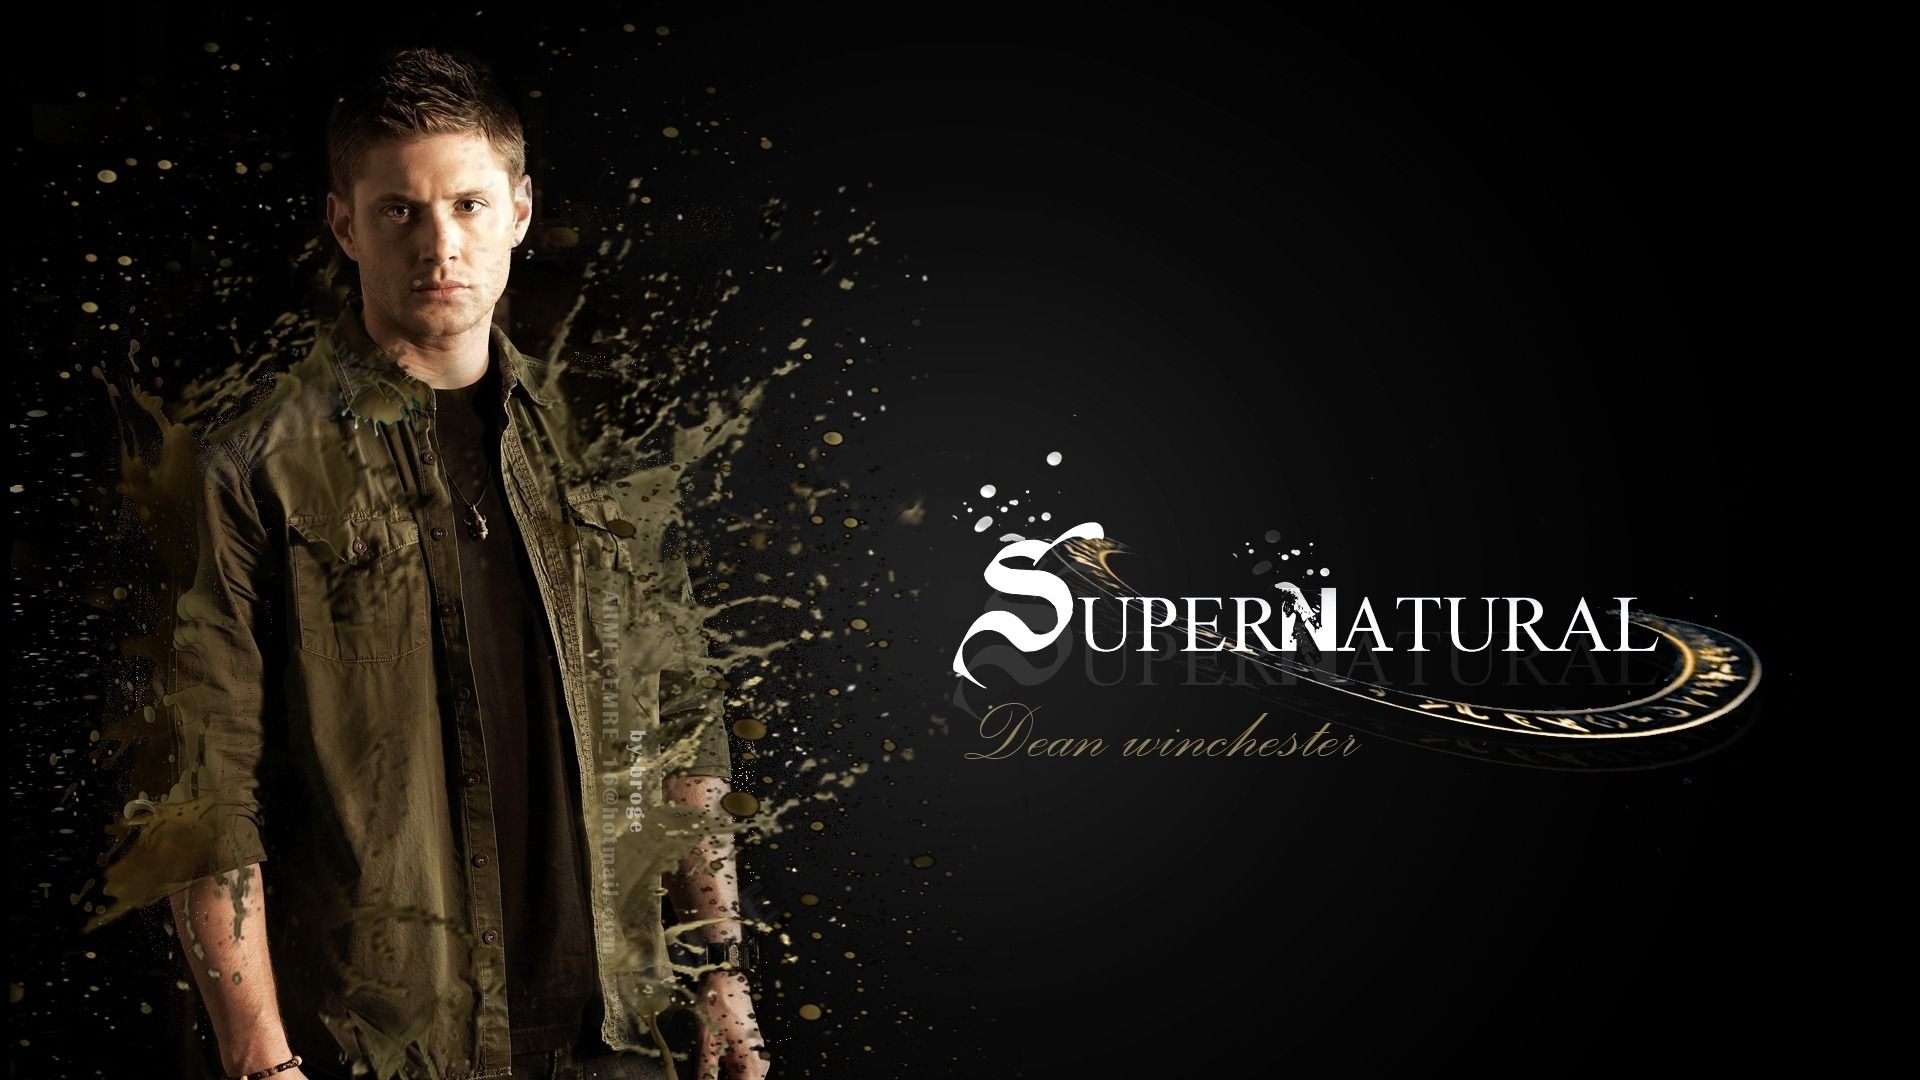 Dean Winchester Supernatural HD Wallpaper